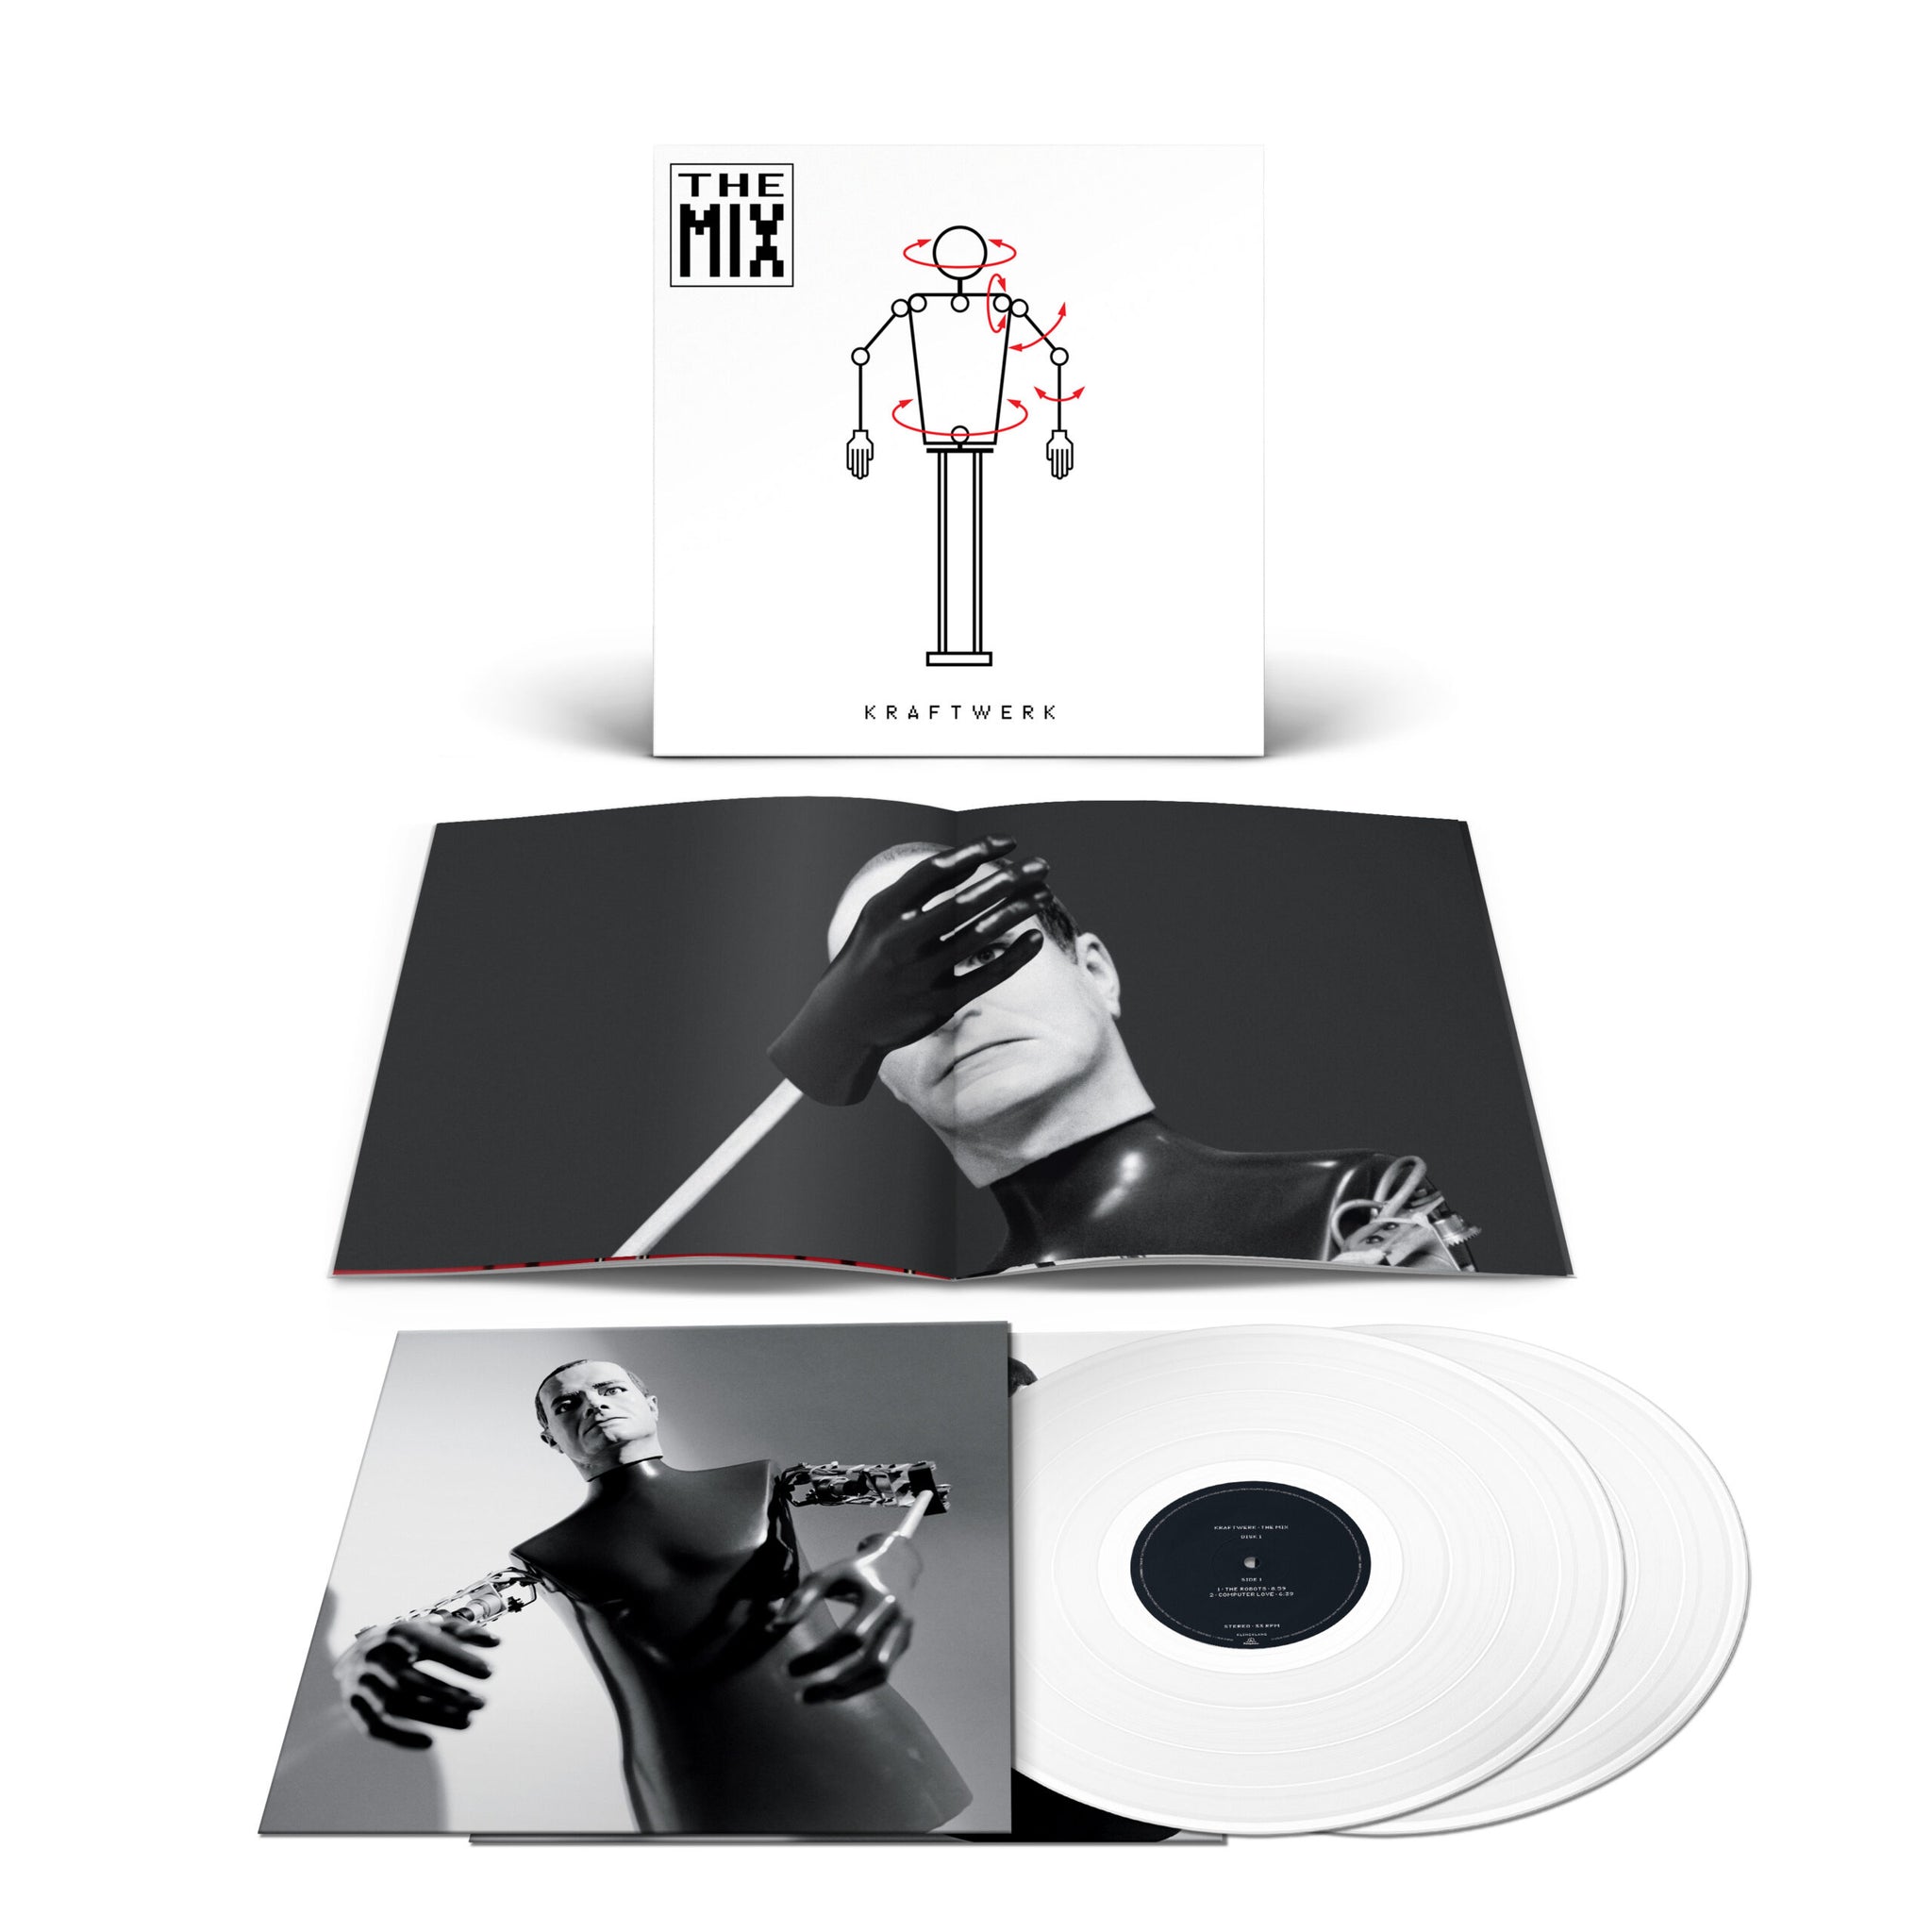 KRAFTWERK – The Mix (German Version) – 2LP – Limited White Vinyl